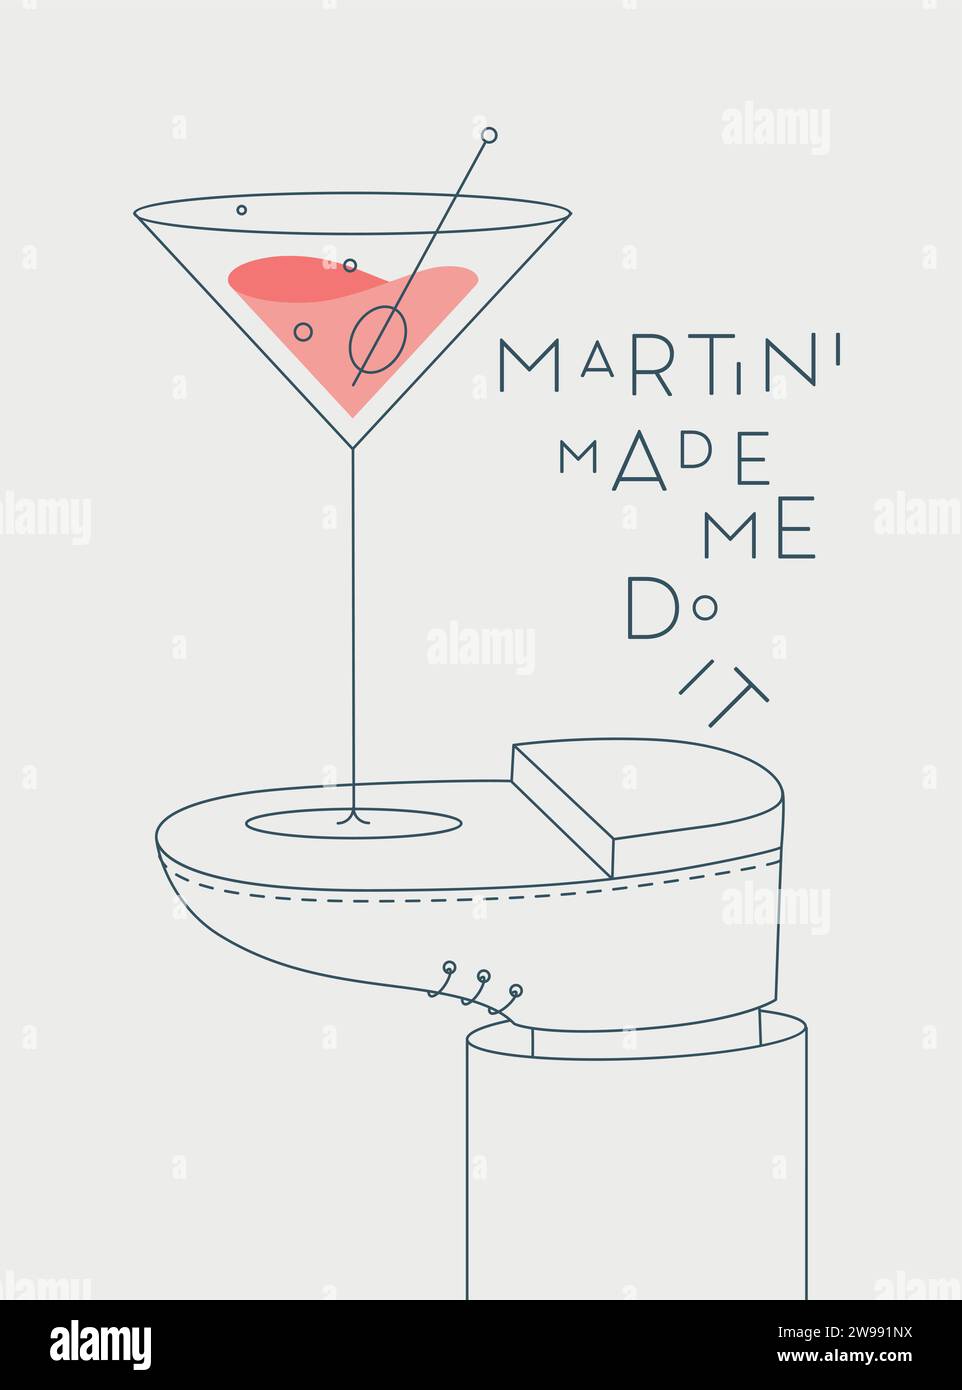 Alkoholposter. Glas mit Martini-Schriftzug hat mich dazu gebracht, es steht zu Fuß und zeichnet im Linienstil auf hellem Hintergrund Stock Vektor